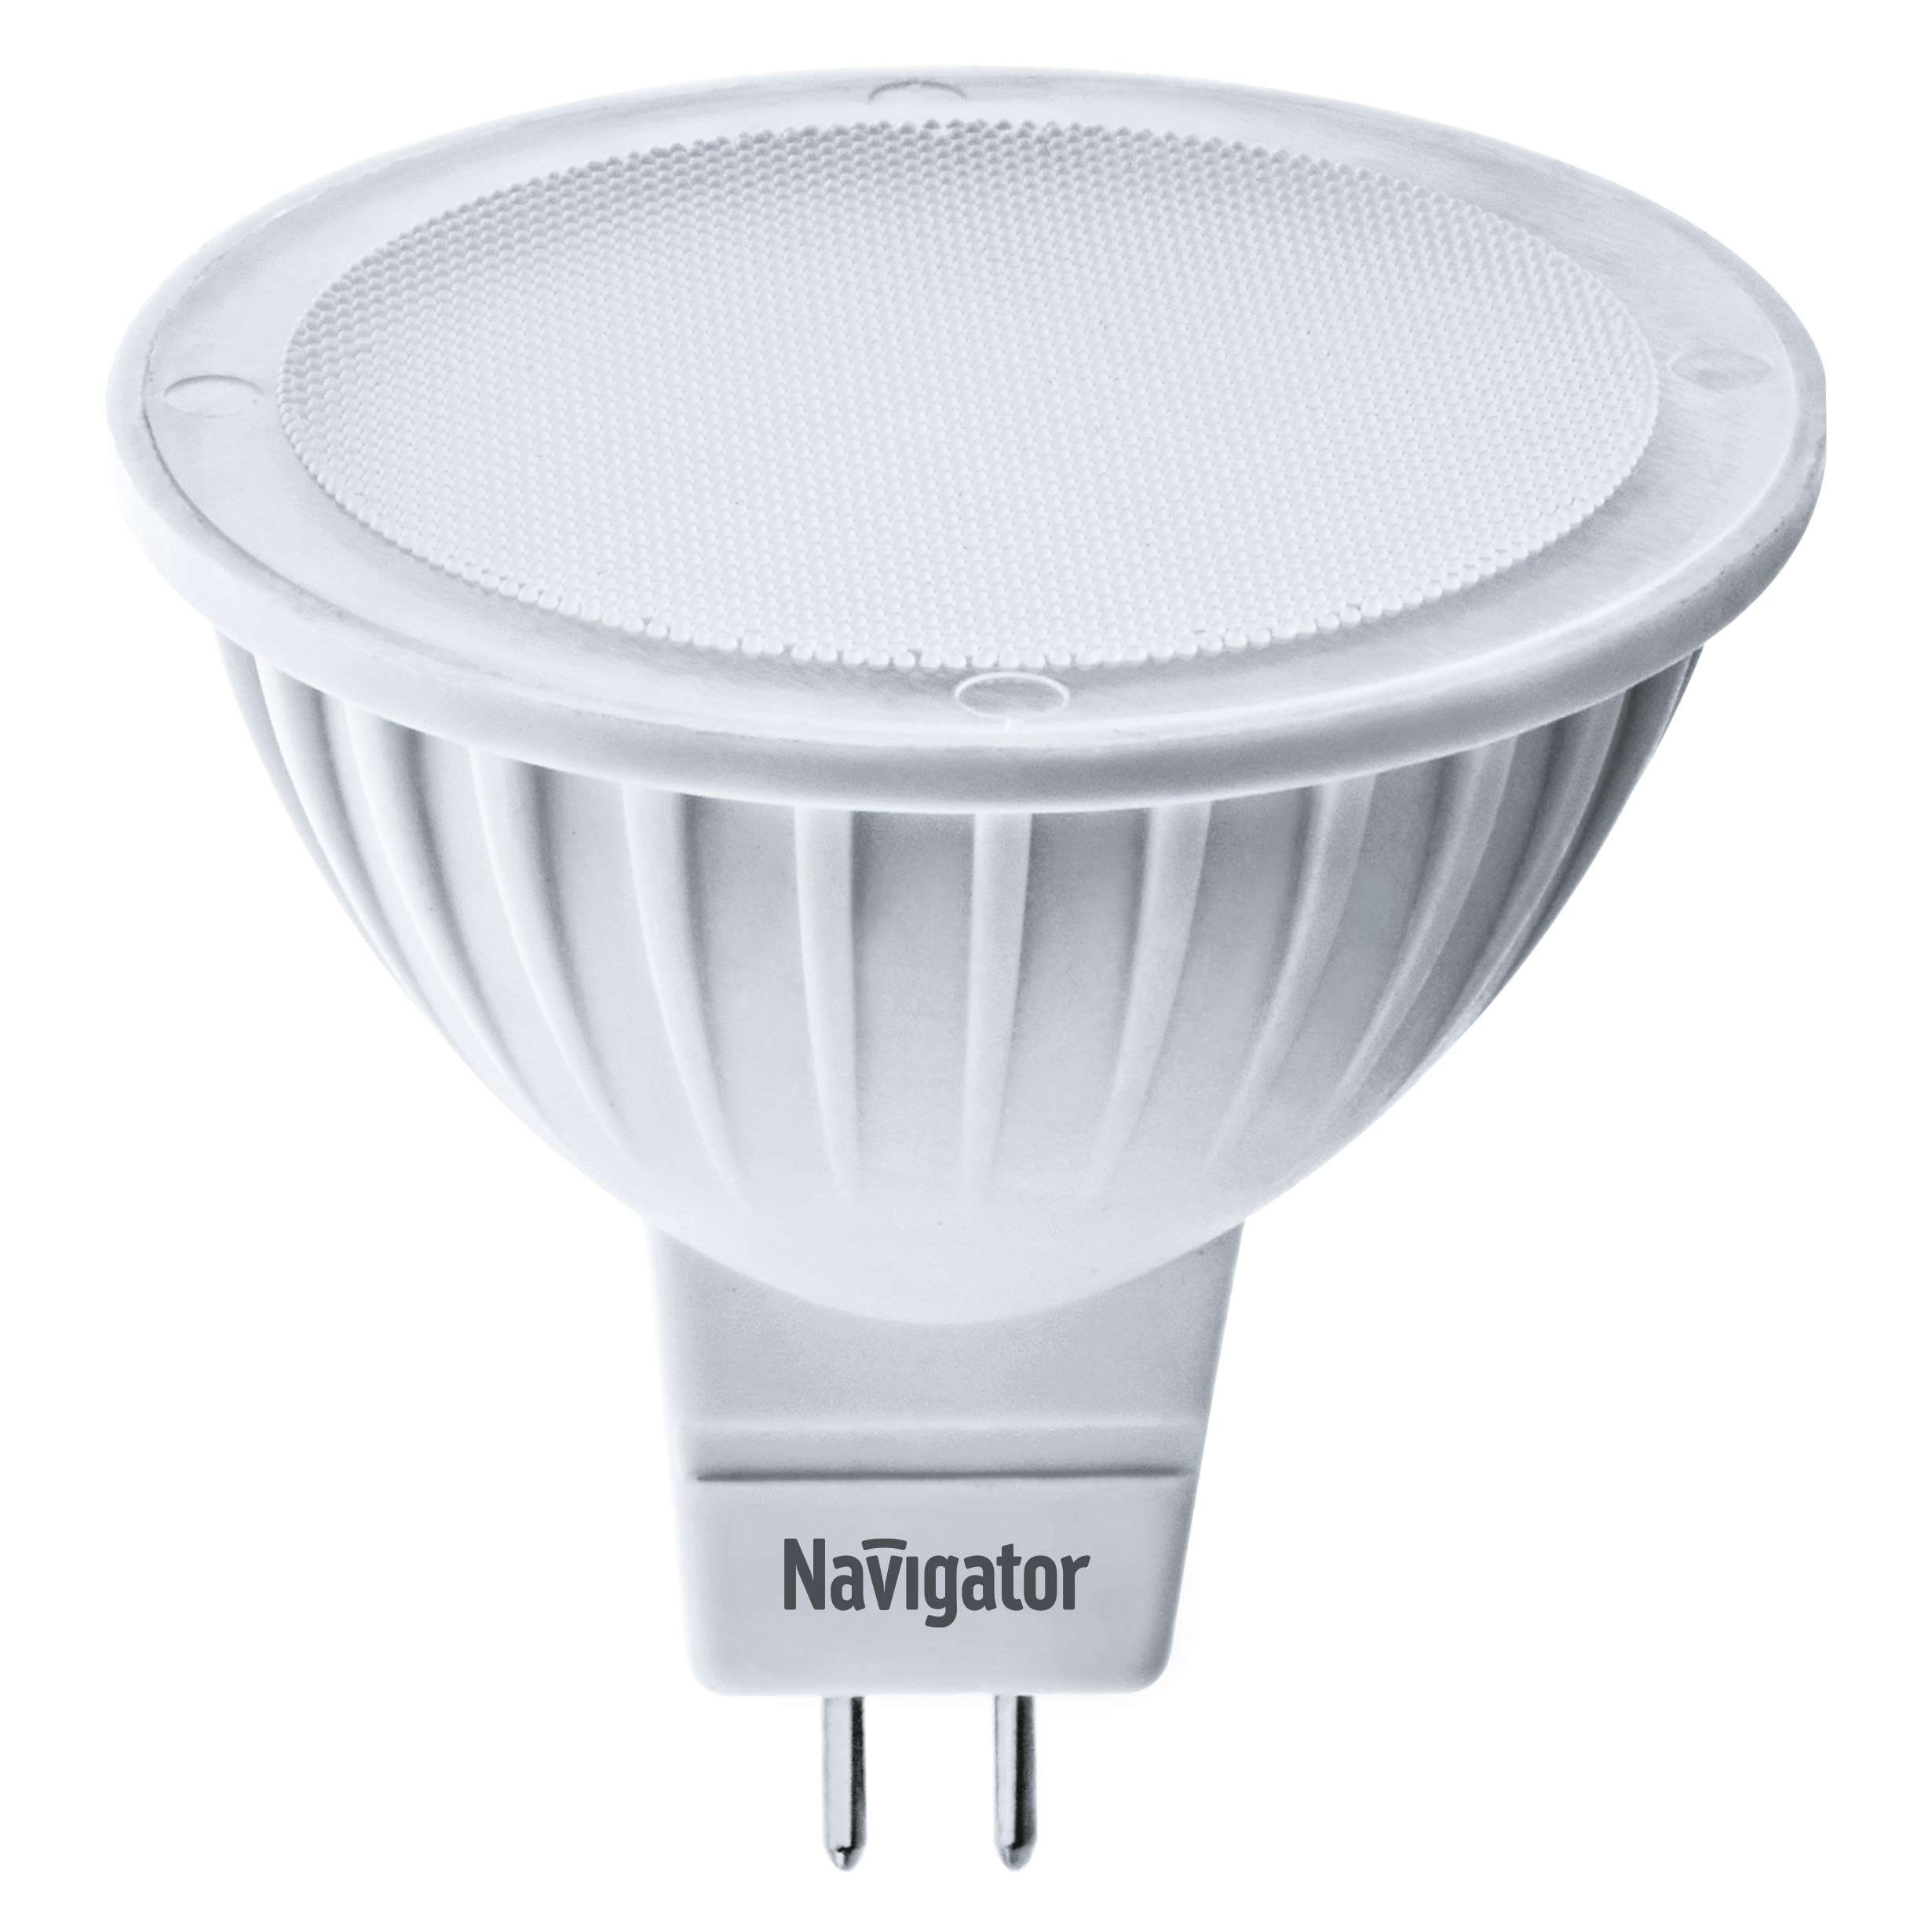 Лампа светодиодная Navigator MR16 5Вт 230В цоколь GU5.3 (холодный свет) лампа светодиодная navigator зеркальная r39 2 5вт цоколь e14 холодный свет